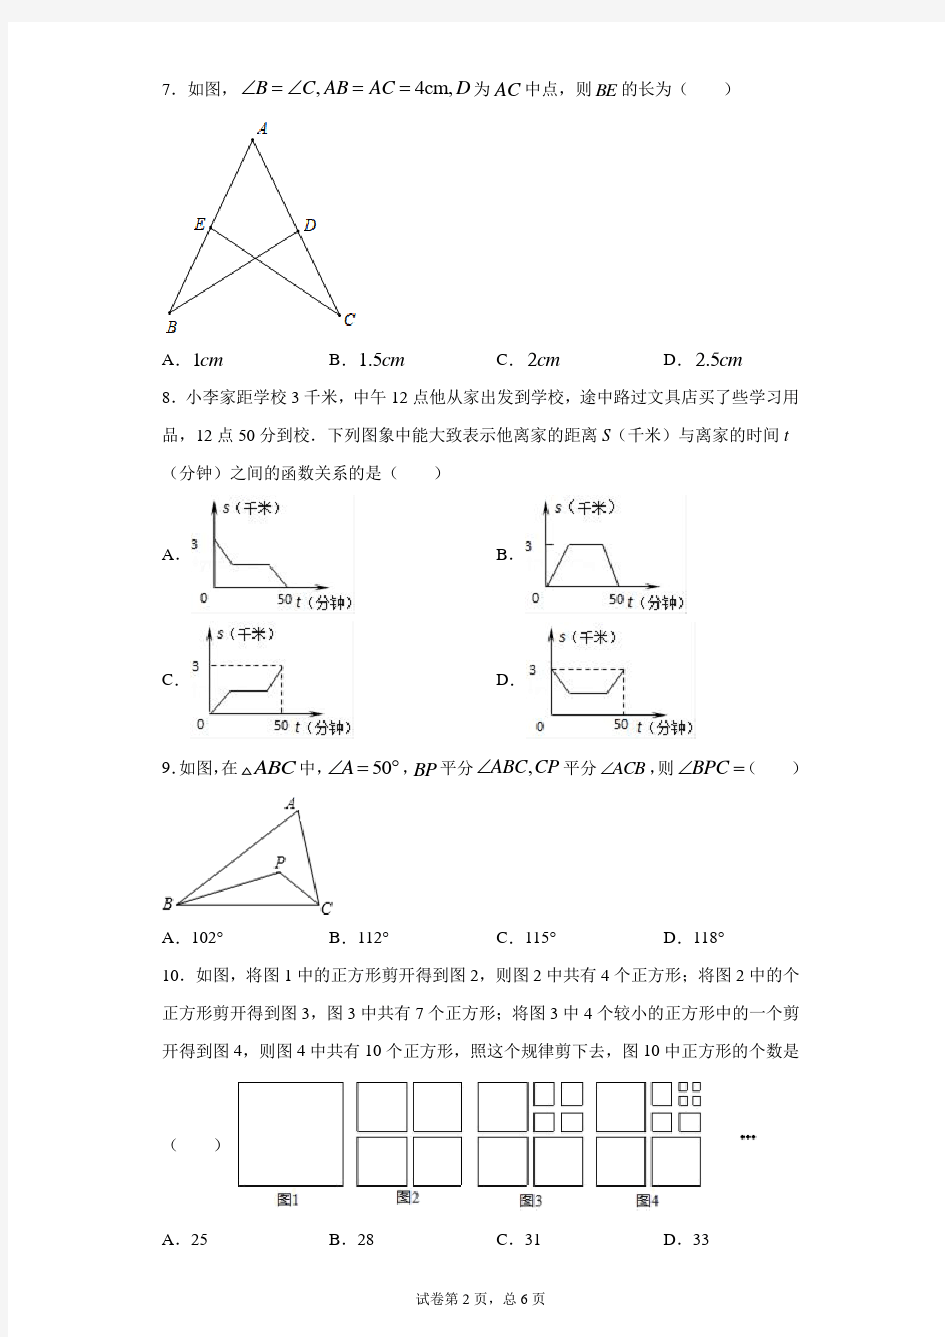 重庆八中2018-2019学年七年级下学期数学月考(10)试卷(有解析)